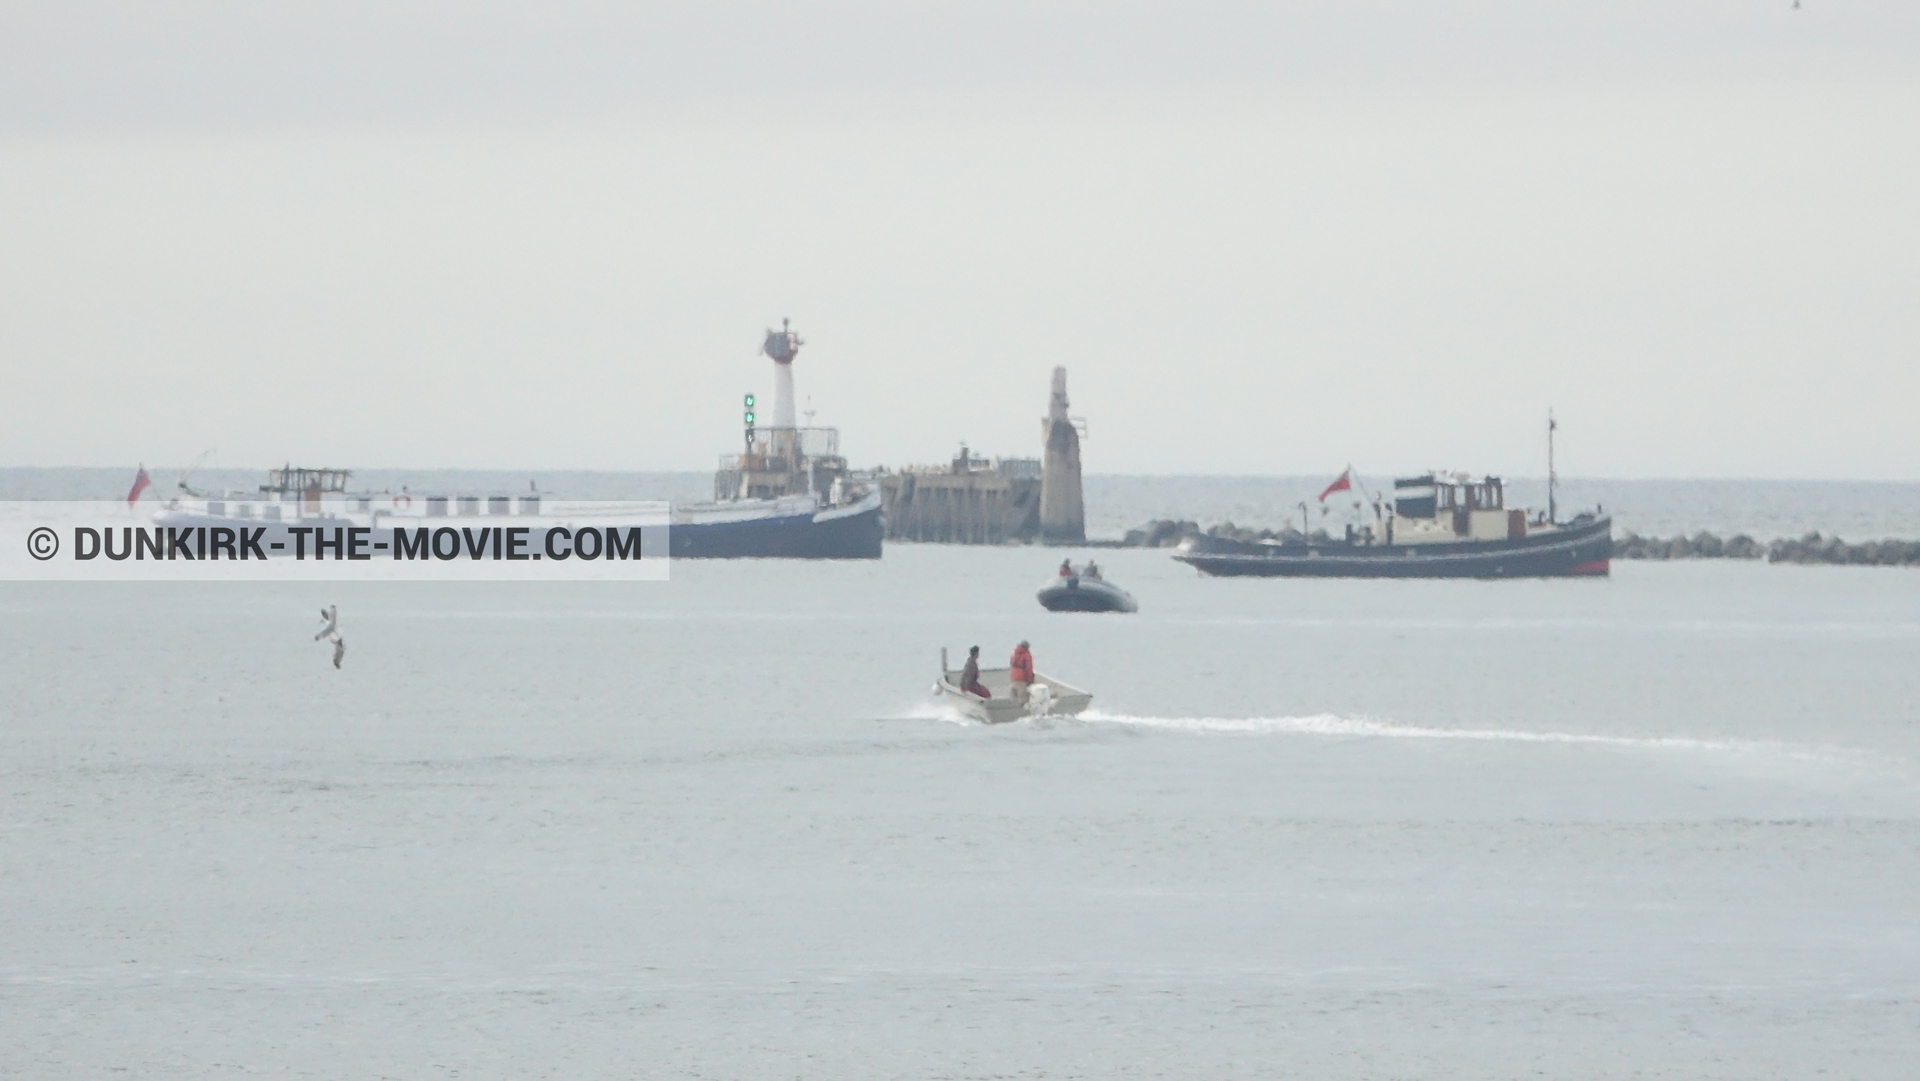 Fotos con barco, cielo gris, mares calma, zodiaco,  durante el rodaje de la película Dunkerque de Nolan